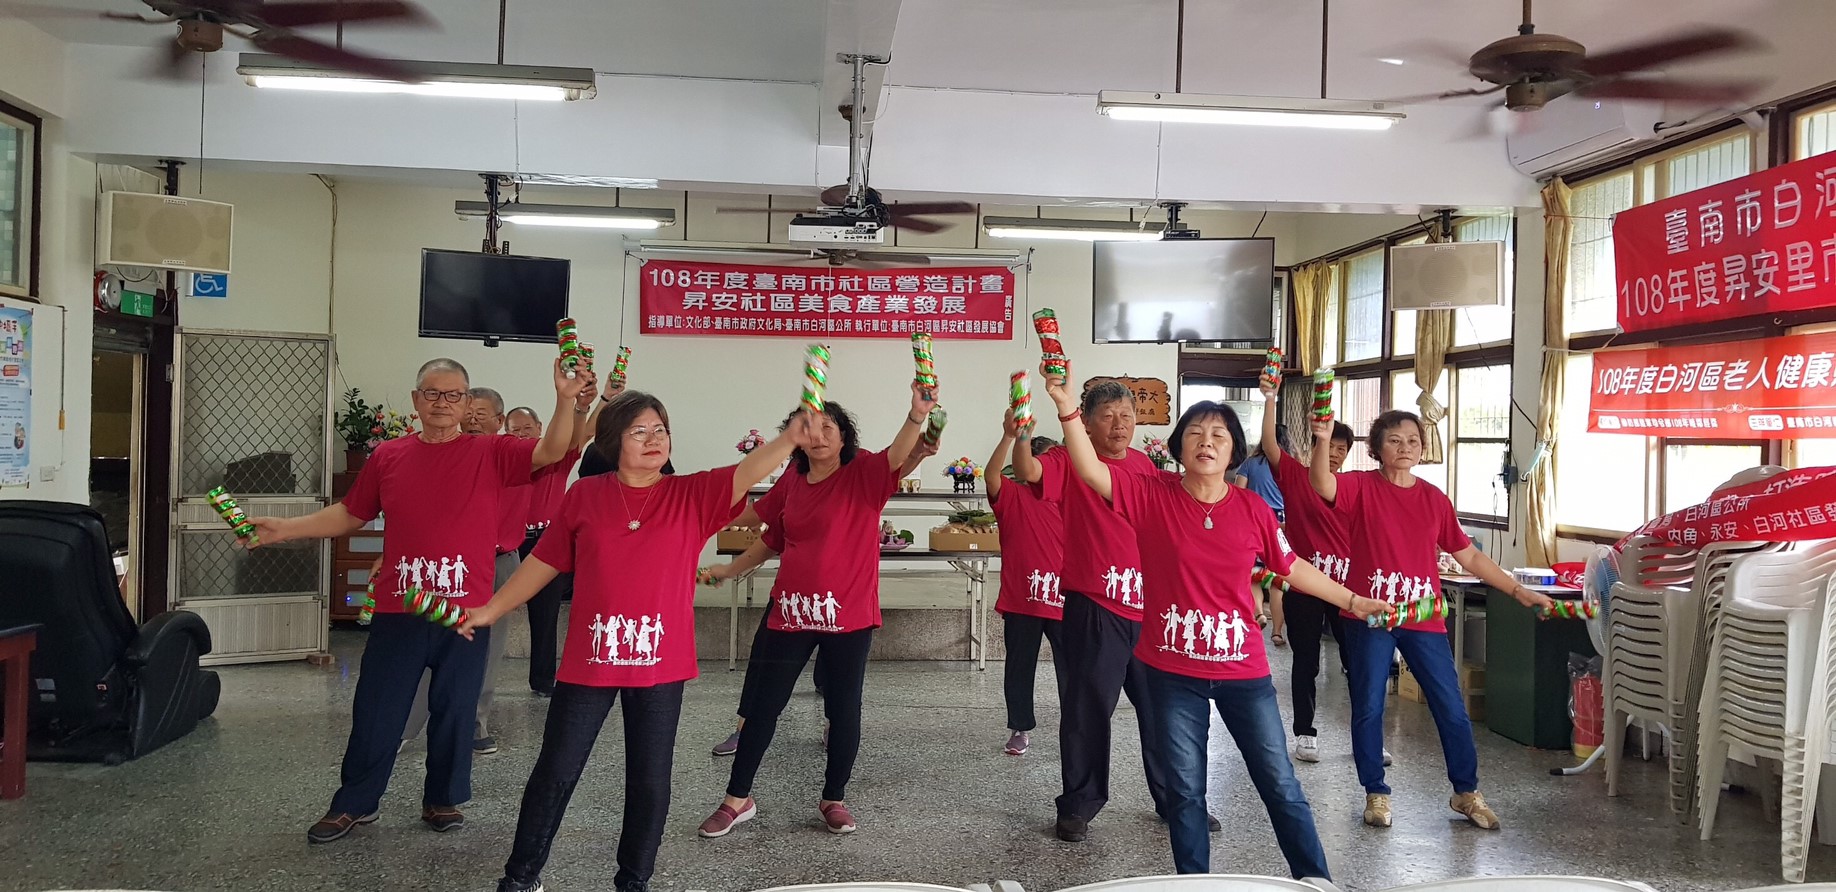 昇安社區婆婆媽媽們的活力舞蹈